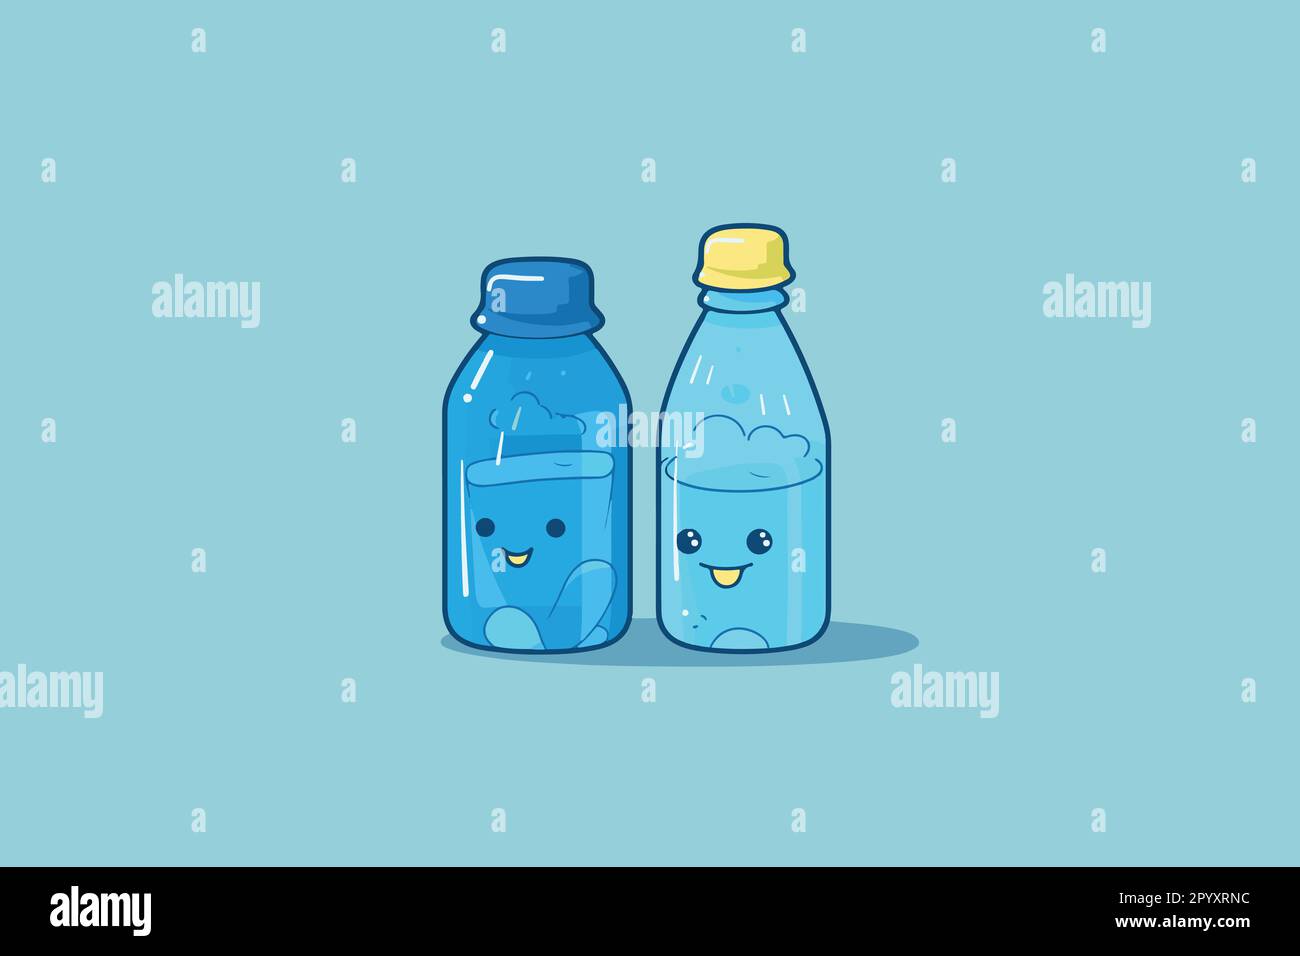 Un disegno piatto del vettore delle bottiglie carine felici sorridenti del cartone animato dell'acqua potabile di emoji. Un paio di illustrazioni delle bottiglie. Illustrazione Vettoriale